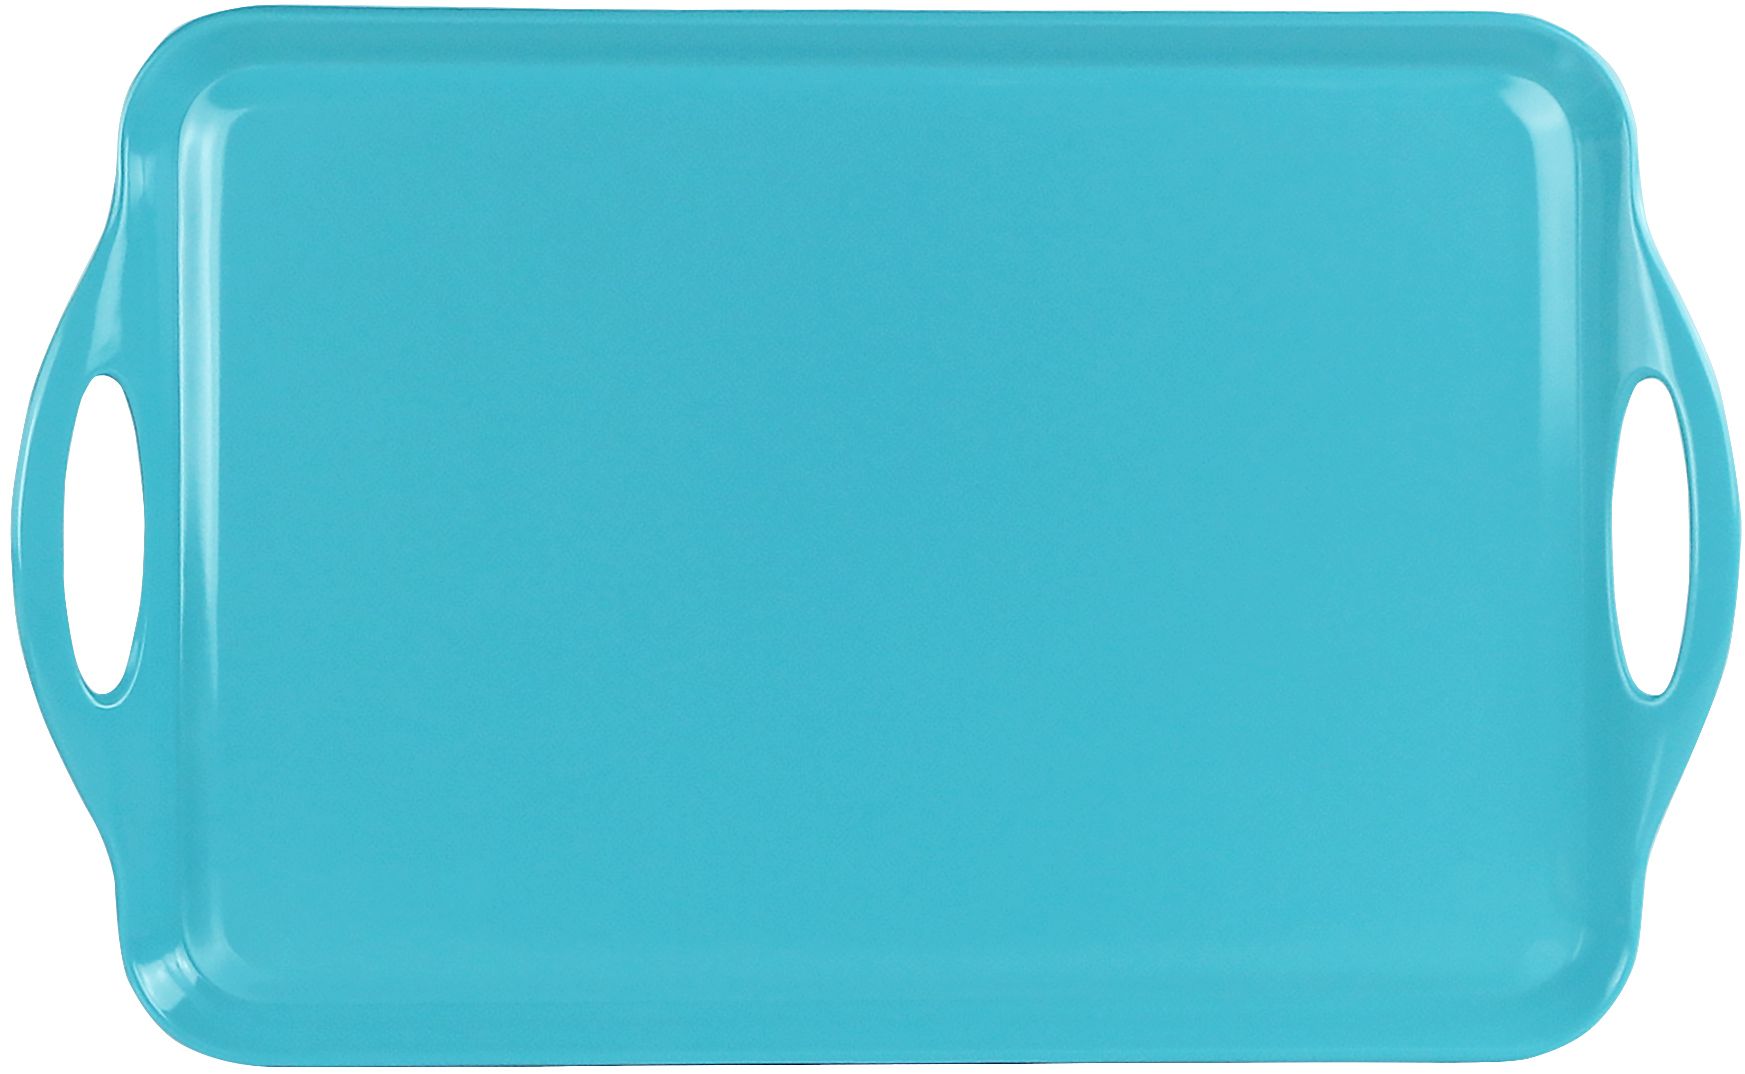 07702 Tuquoise - Rectangular Tray